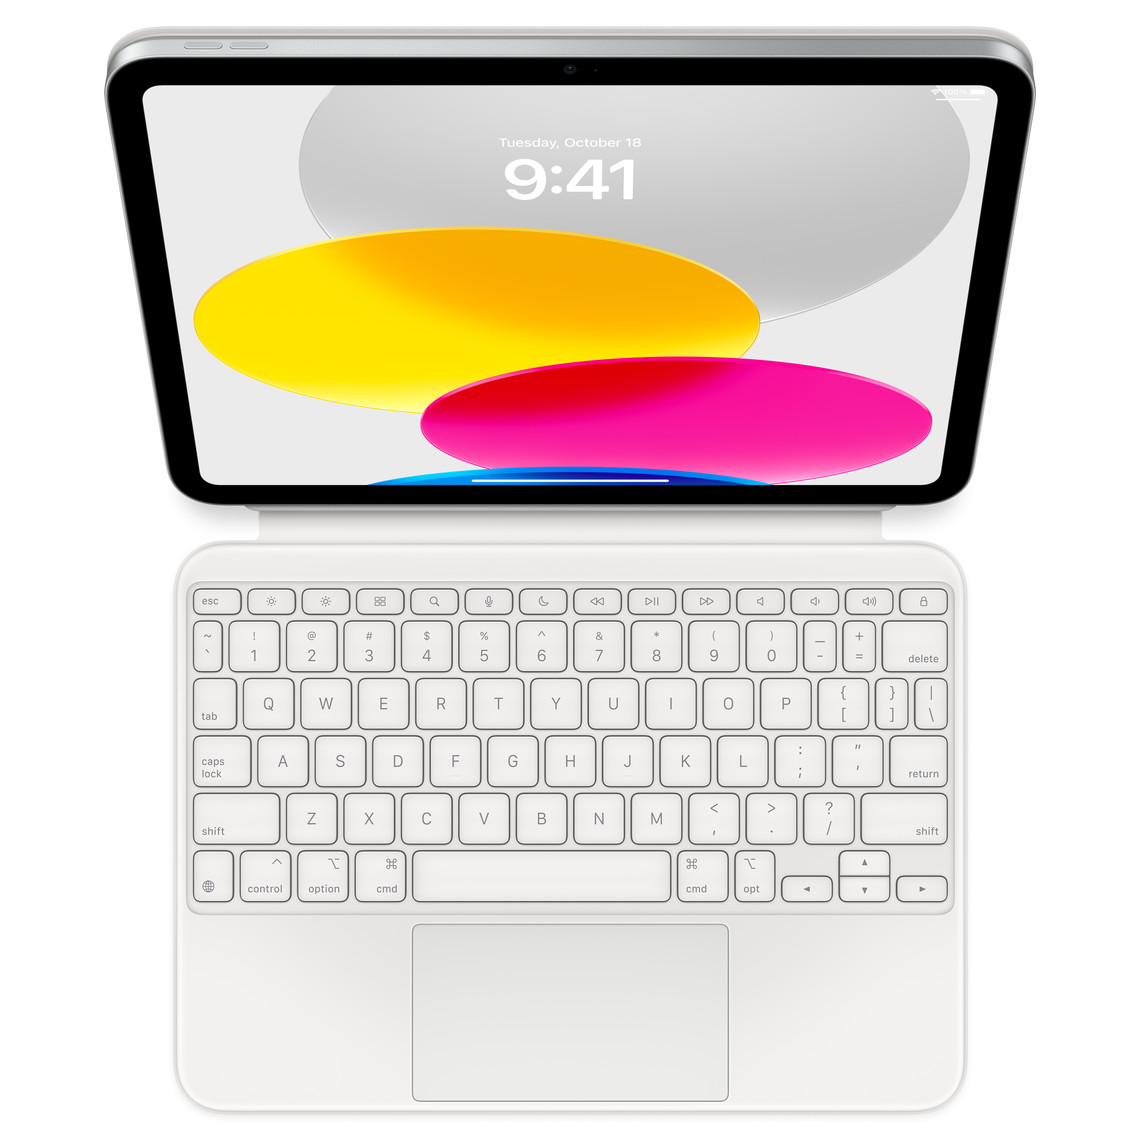 Imagem de cima para baixo que mostra o iPad conectado ao Magic Keyboard Folio. Tela com imagens de círculos de várias cores.